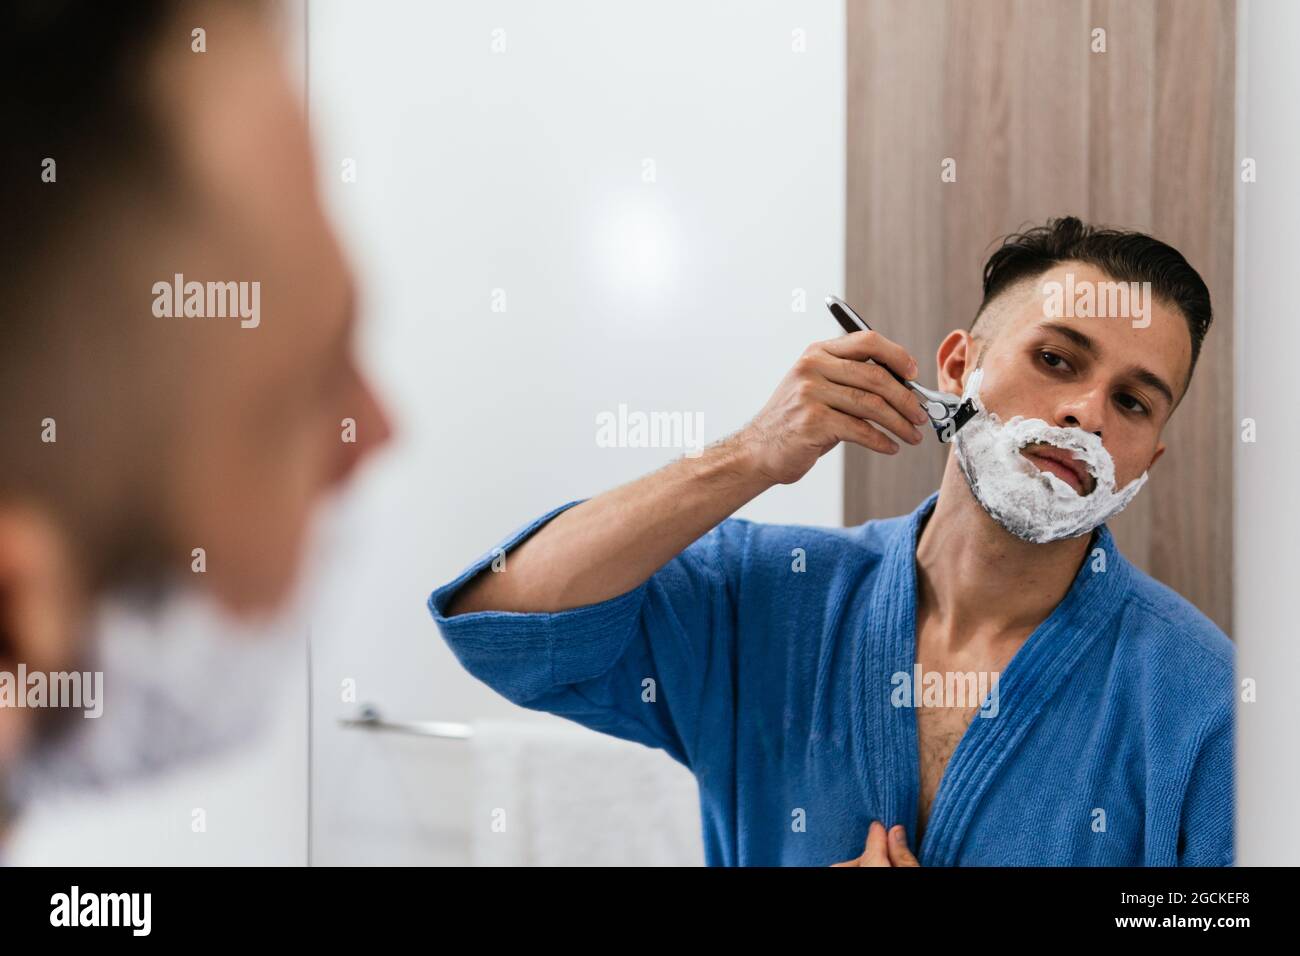 Crop konzentrierte junge ethnische Kerl in blauen Bademantel Blick in  Spiegel und Rasieren mit Rasierer während der täglichen Beauty-Routine im  Bad Stockfotografie - Alamy